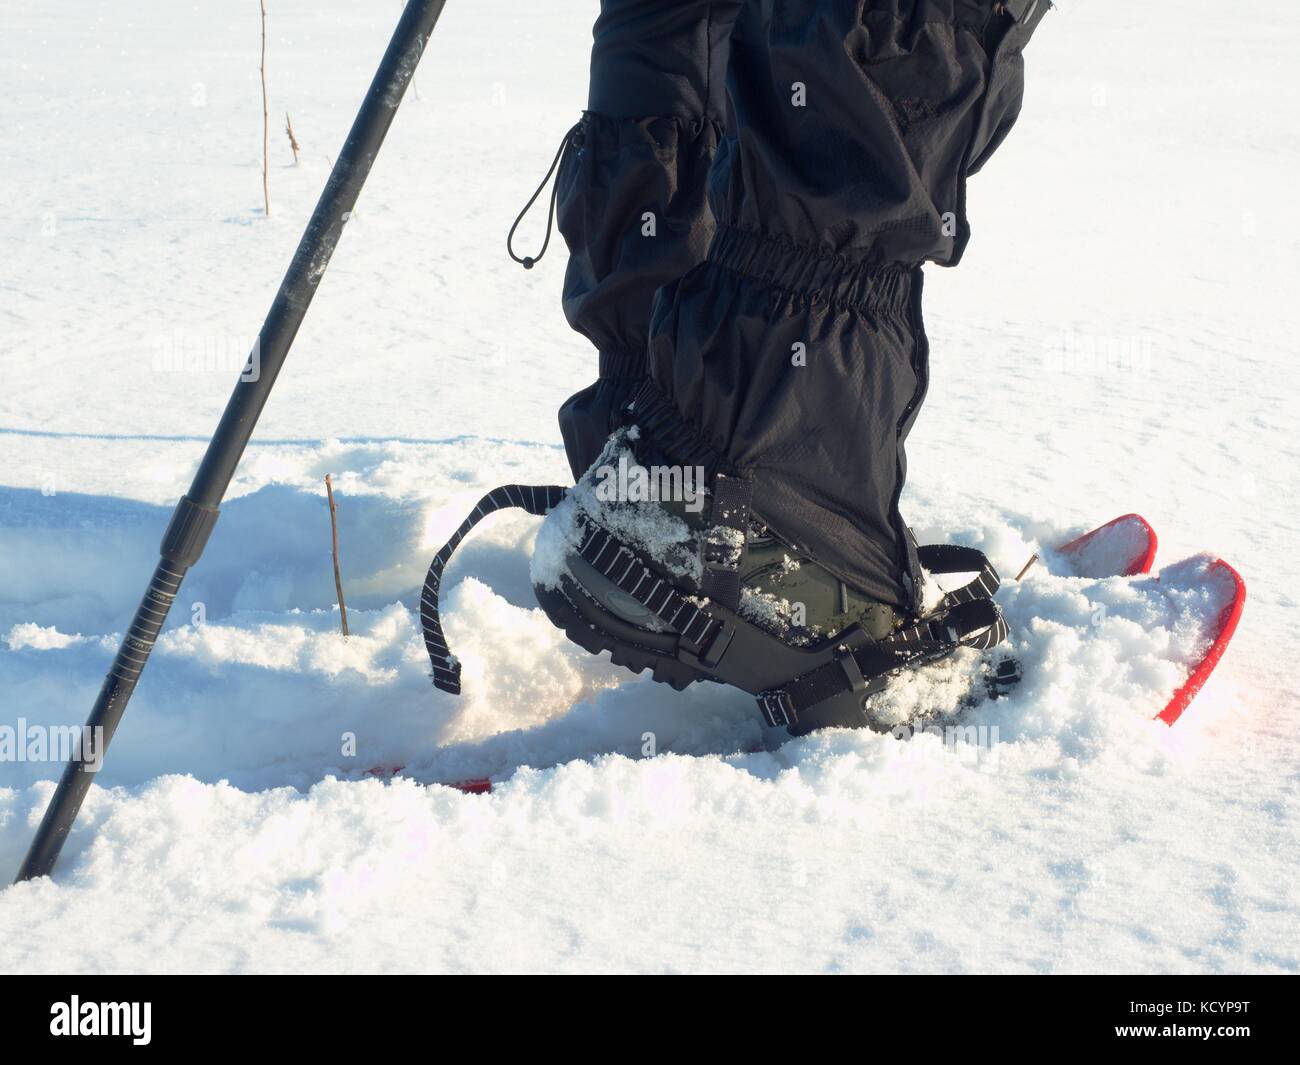 Hombre piernas caminar con raquetas de nieve en invierno. Detalle de  caminata en ventisquero, raquetas de nieve con bastones de trekking y  zapata cubierta por nieve en polvo s de plástico rojo